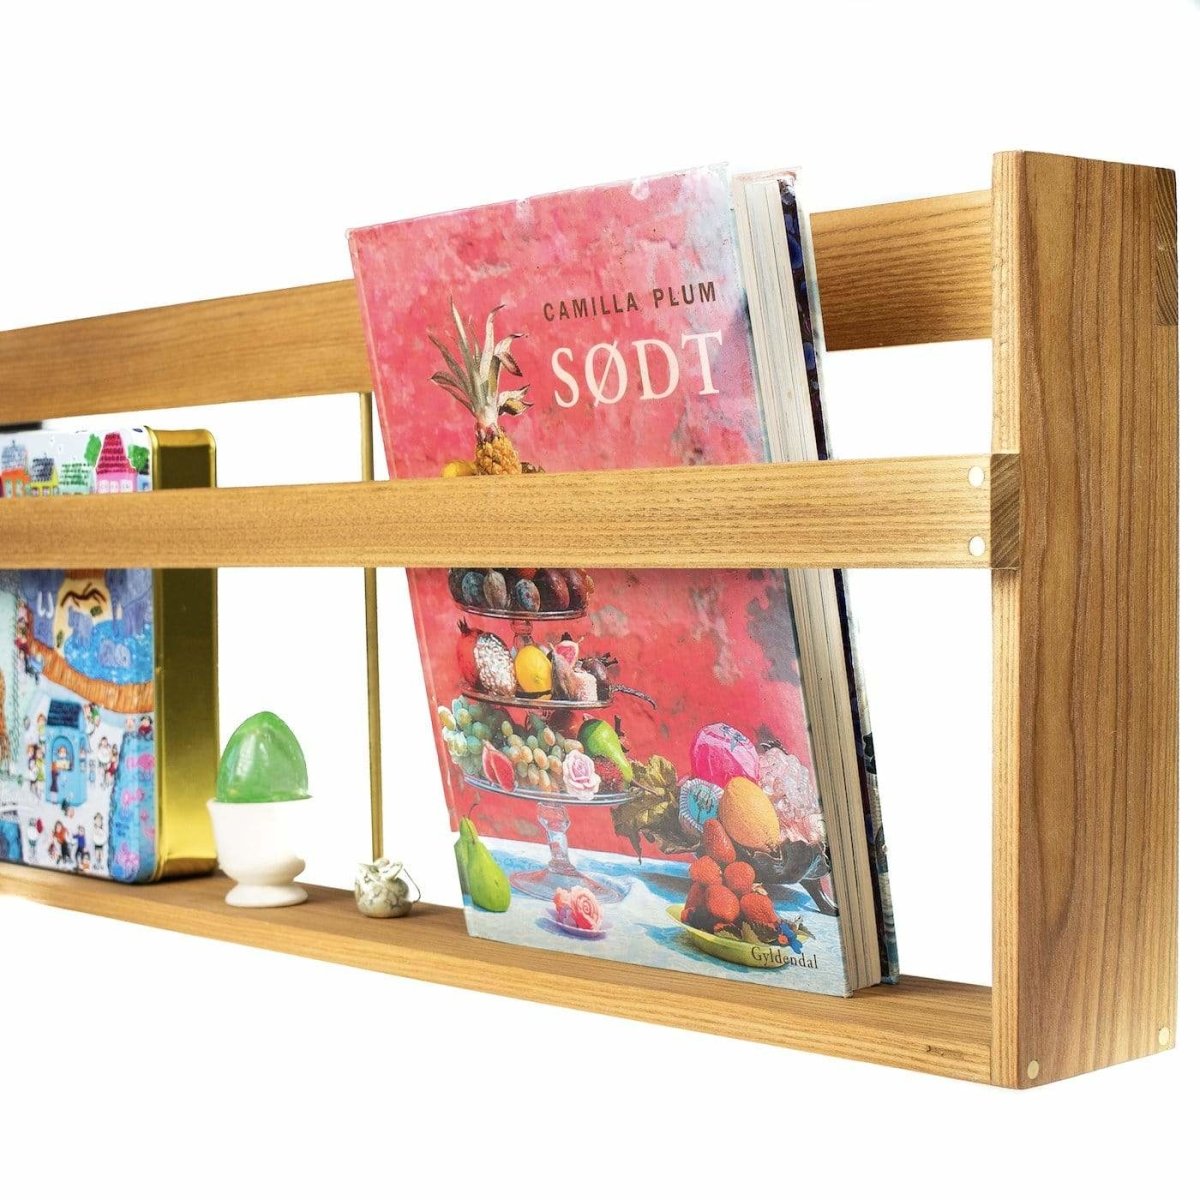 'Shelf' magasinhylde Hylder fra Rune-Jakobsen Design